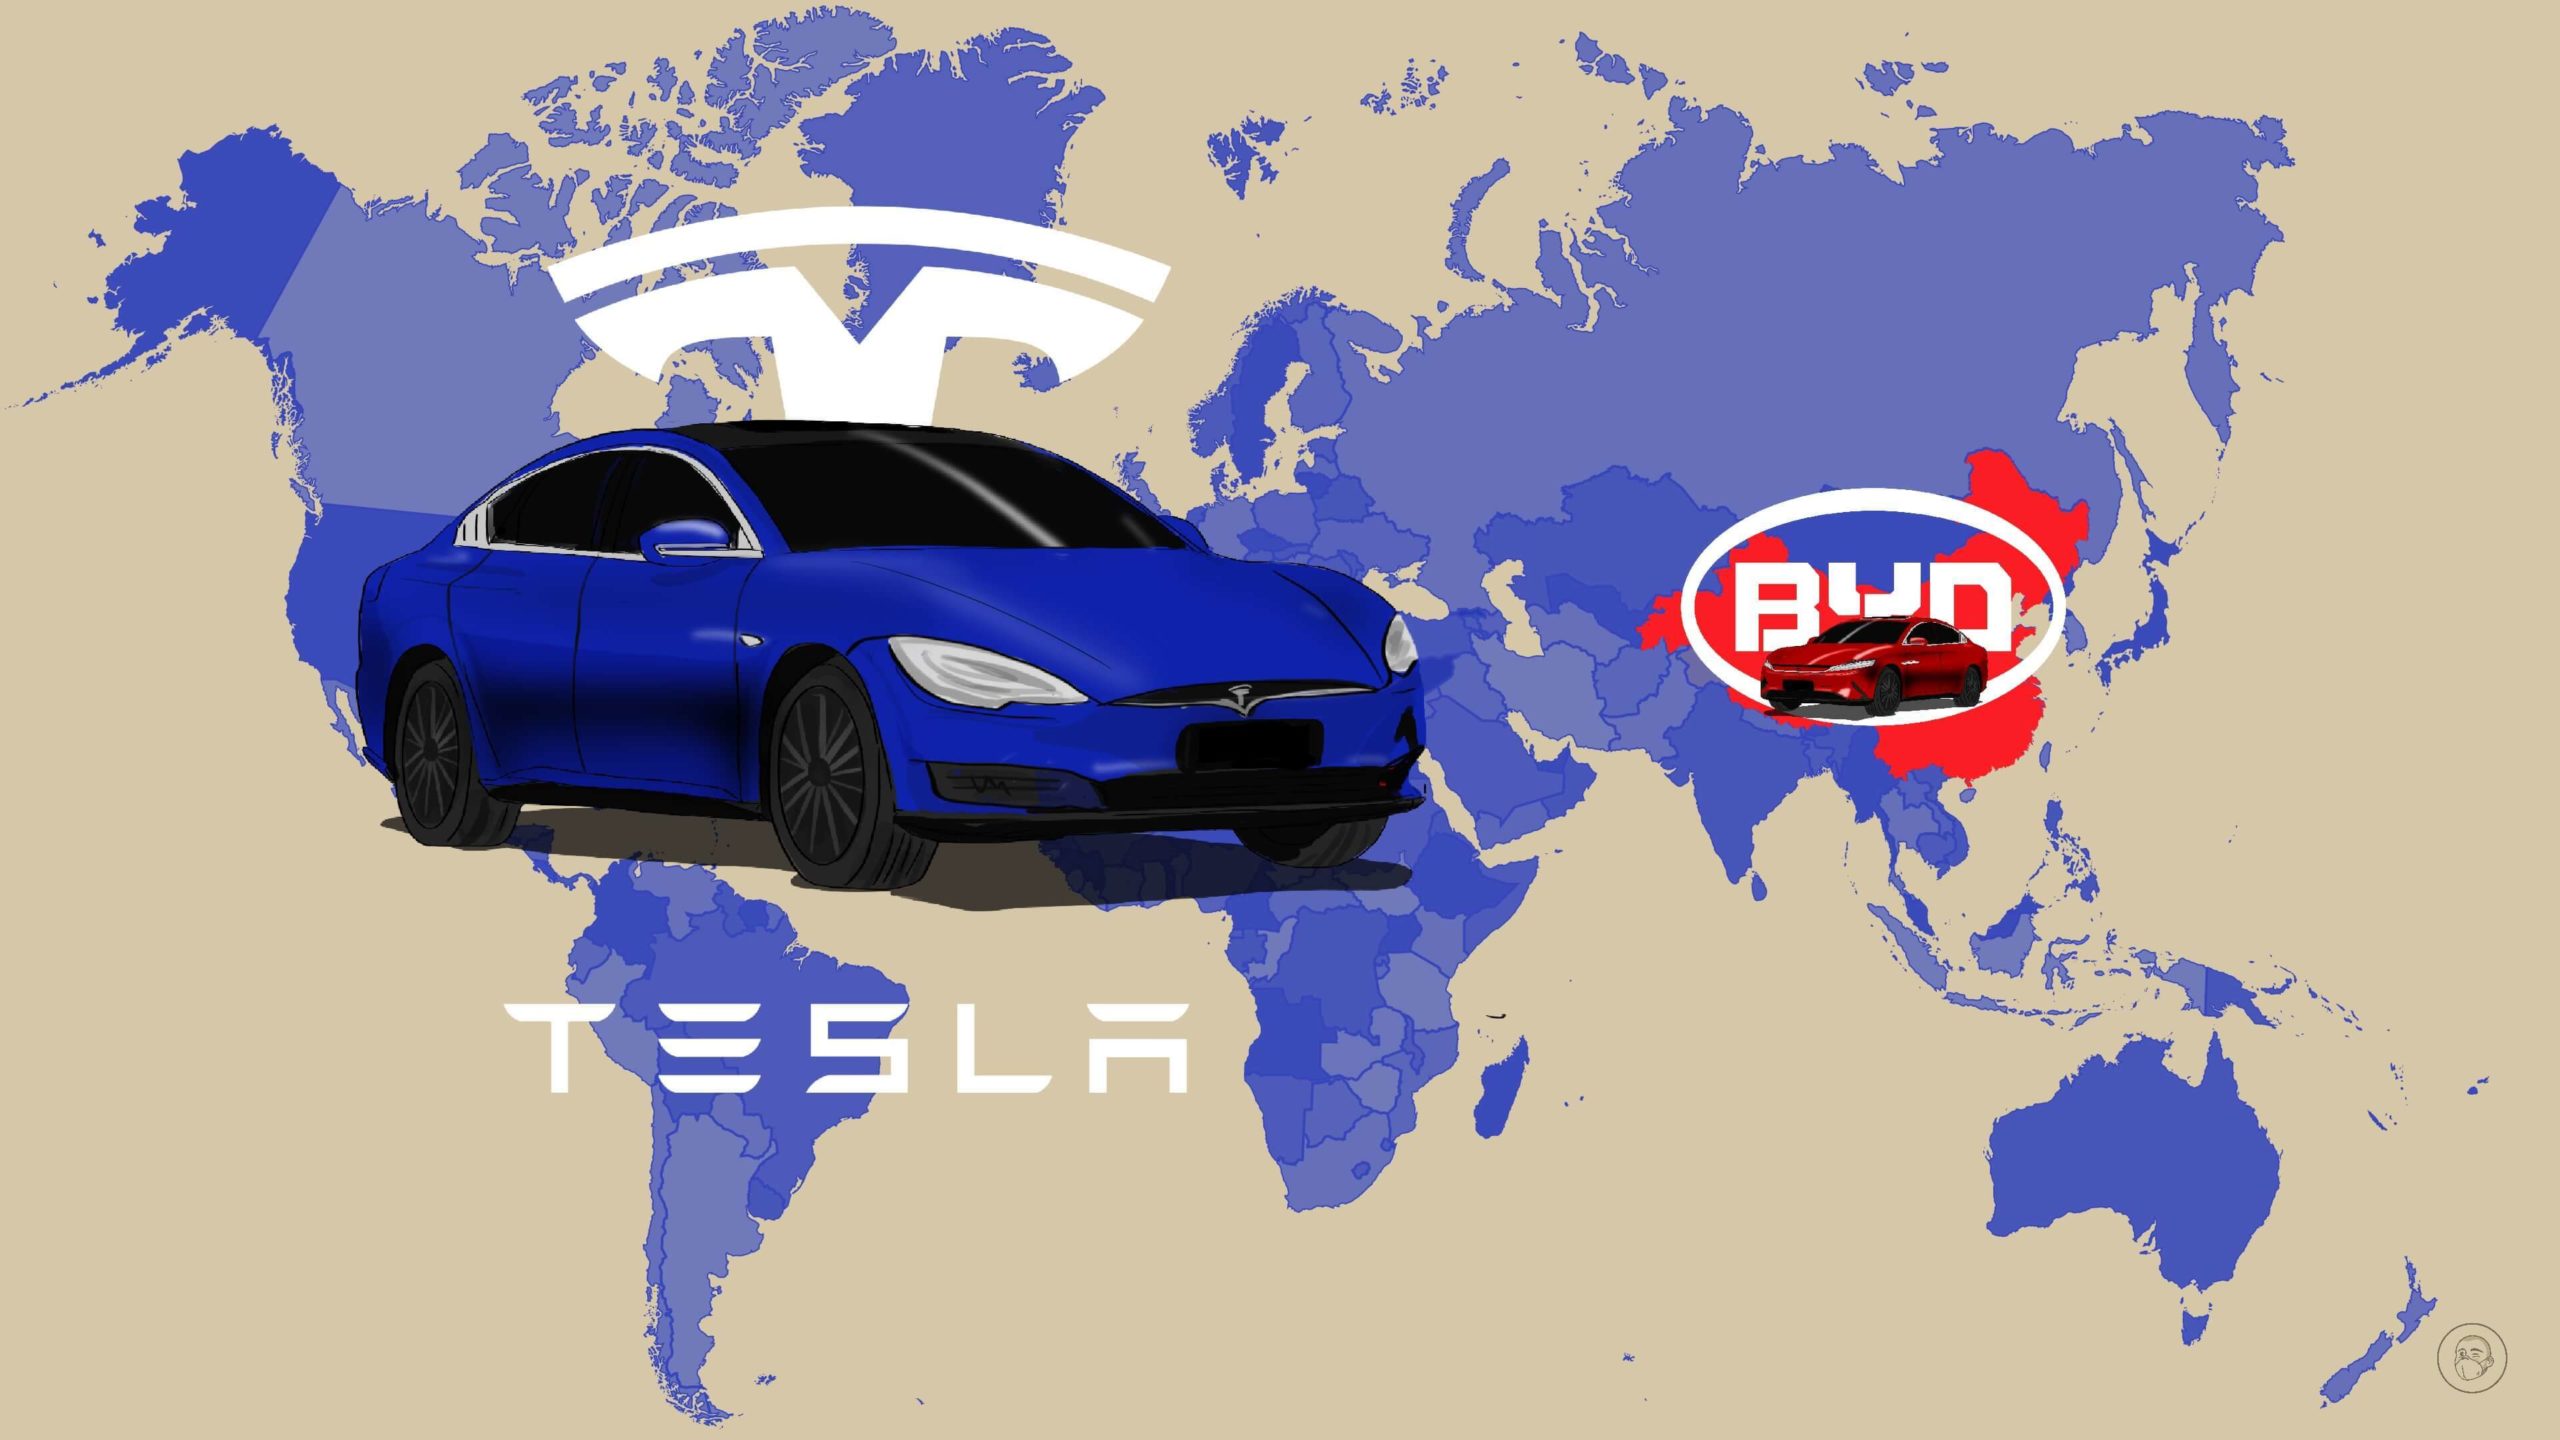 “Gã khổng lồ” xe điện Trung Quốc BYD khiến Tesla "phát sốt"